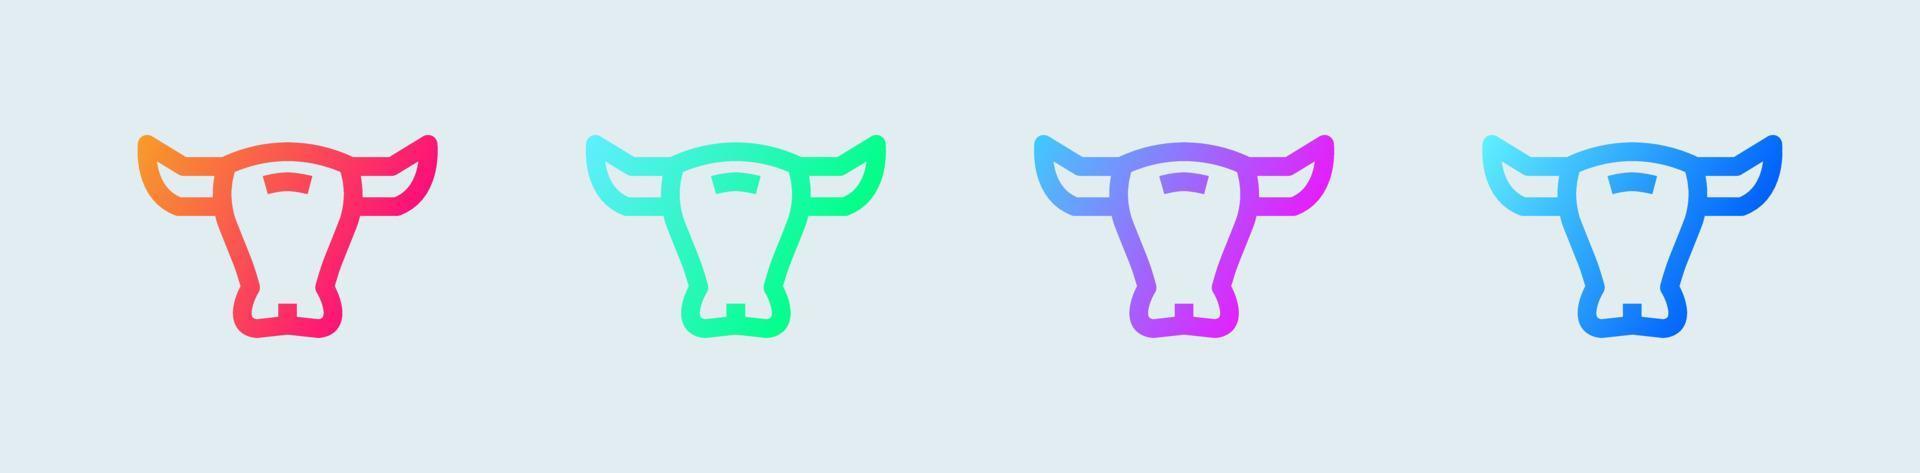 icona della linea toro in colori sfumati. illustrazione vettoriale di segni di forza e perseveranza.